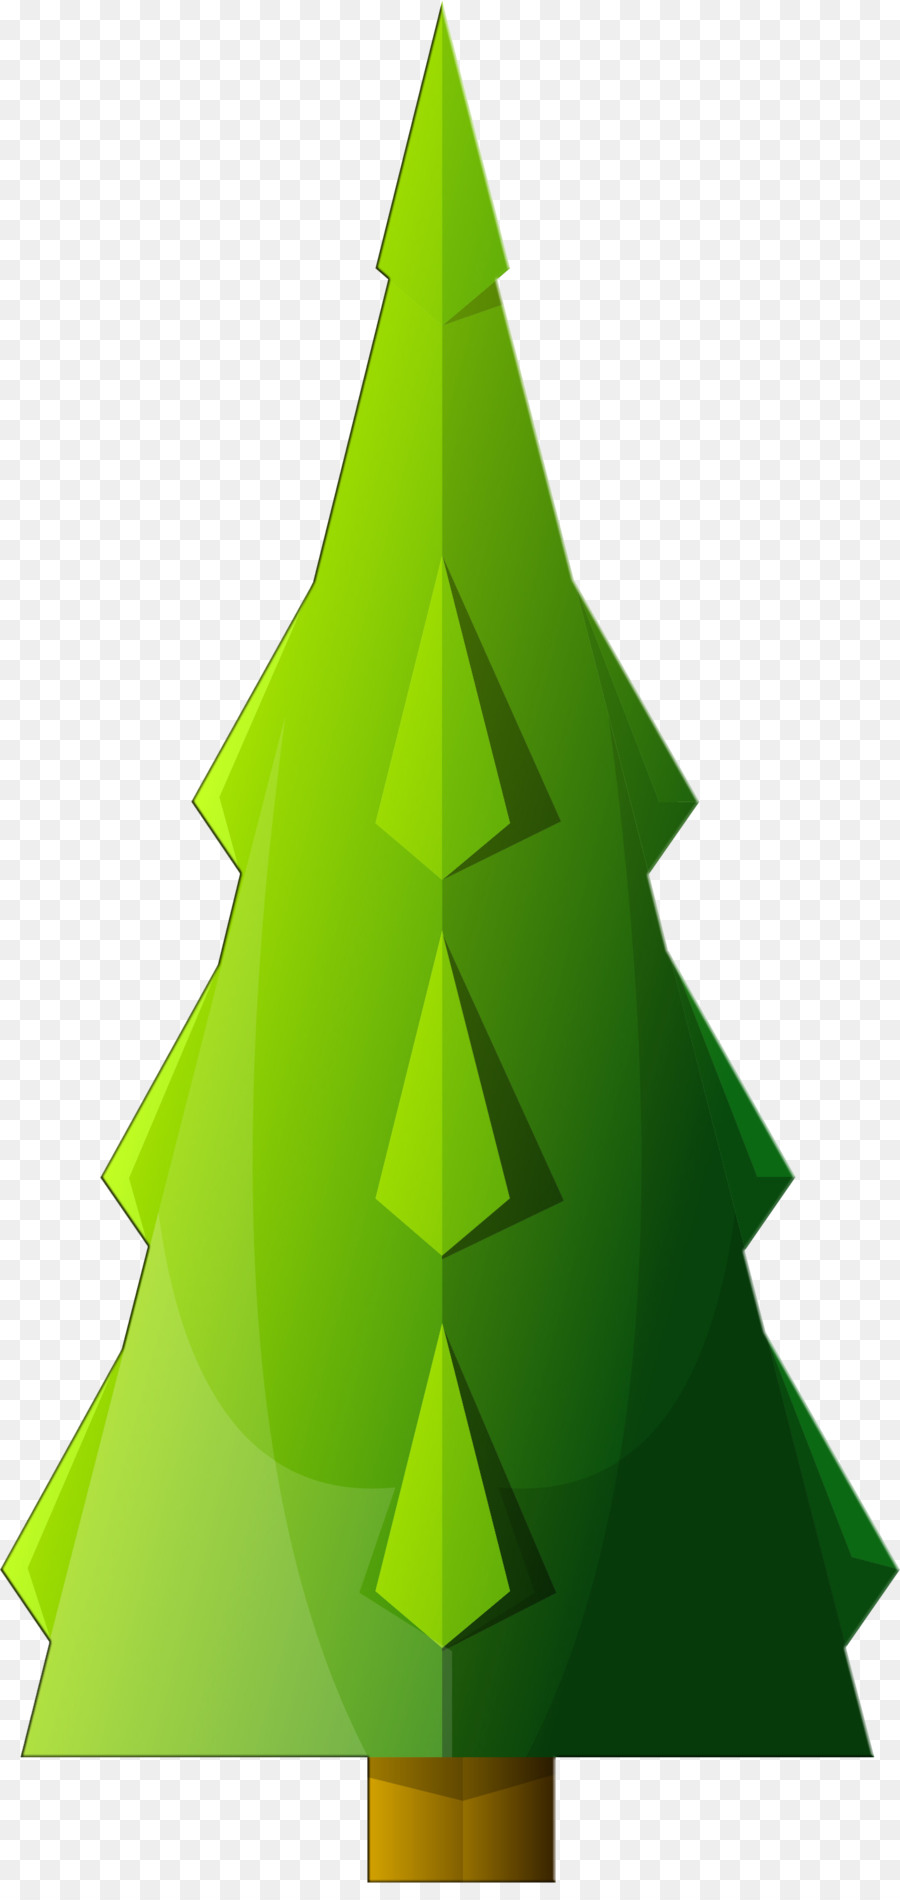 Paper Christmas tree Origami Schritt für Schritt Weihnachten ornament - Tanne